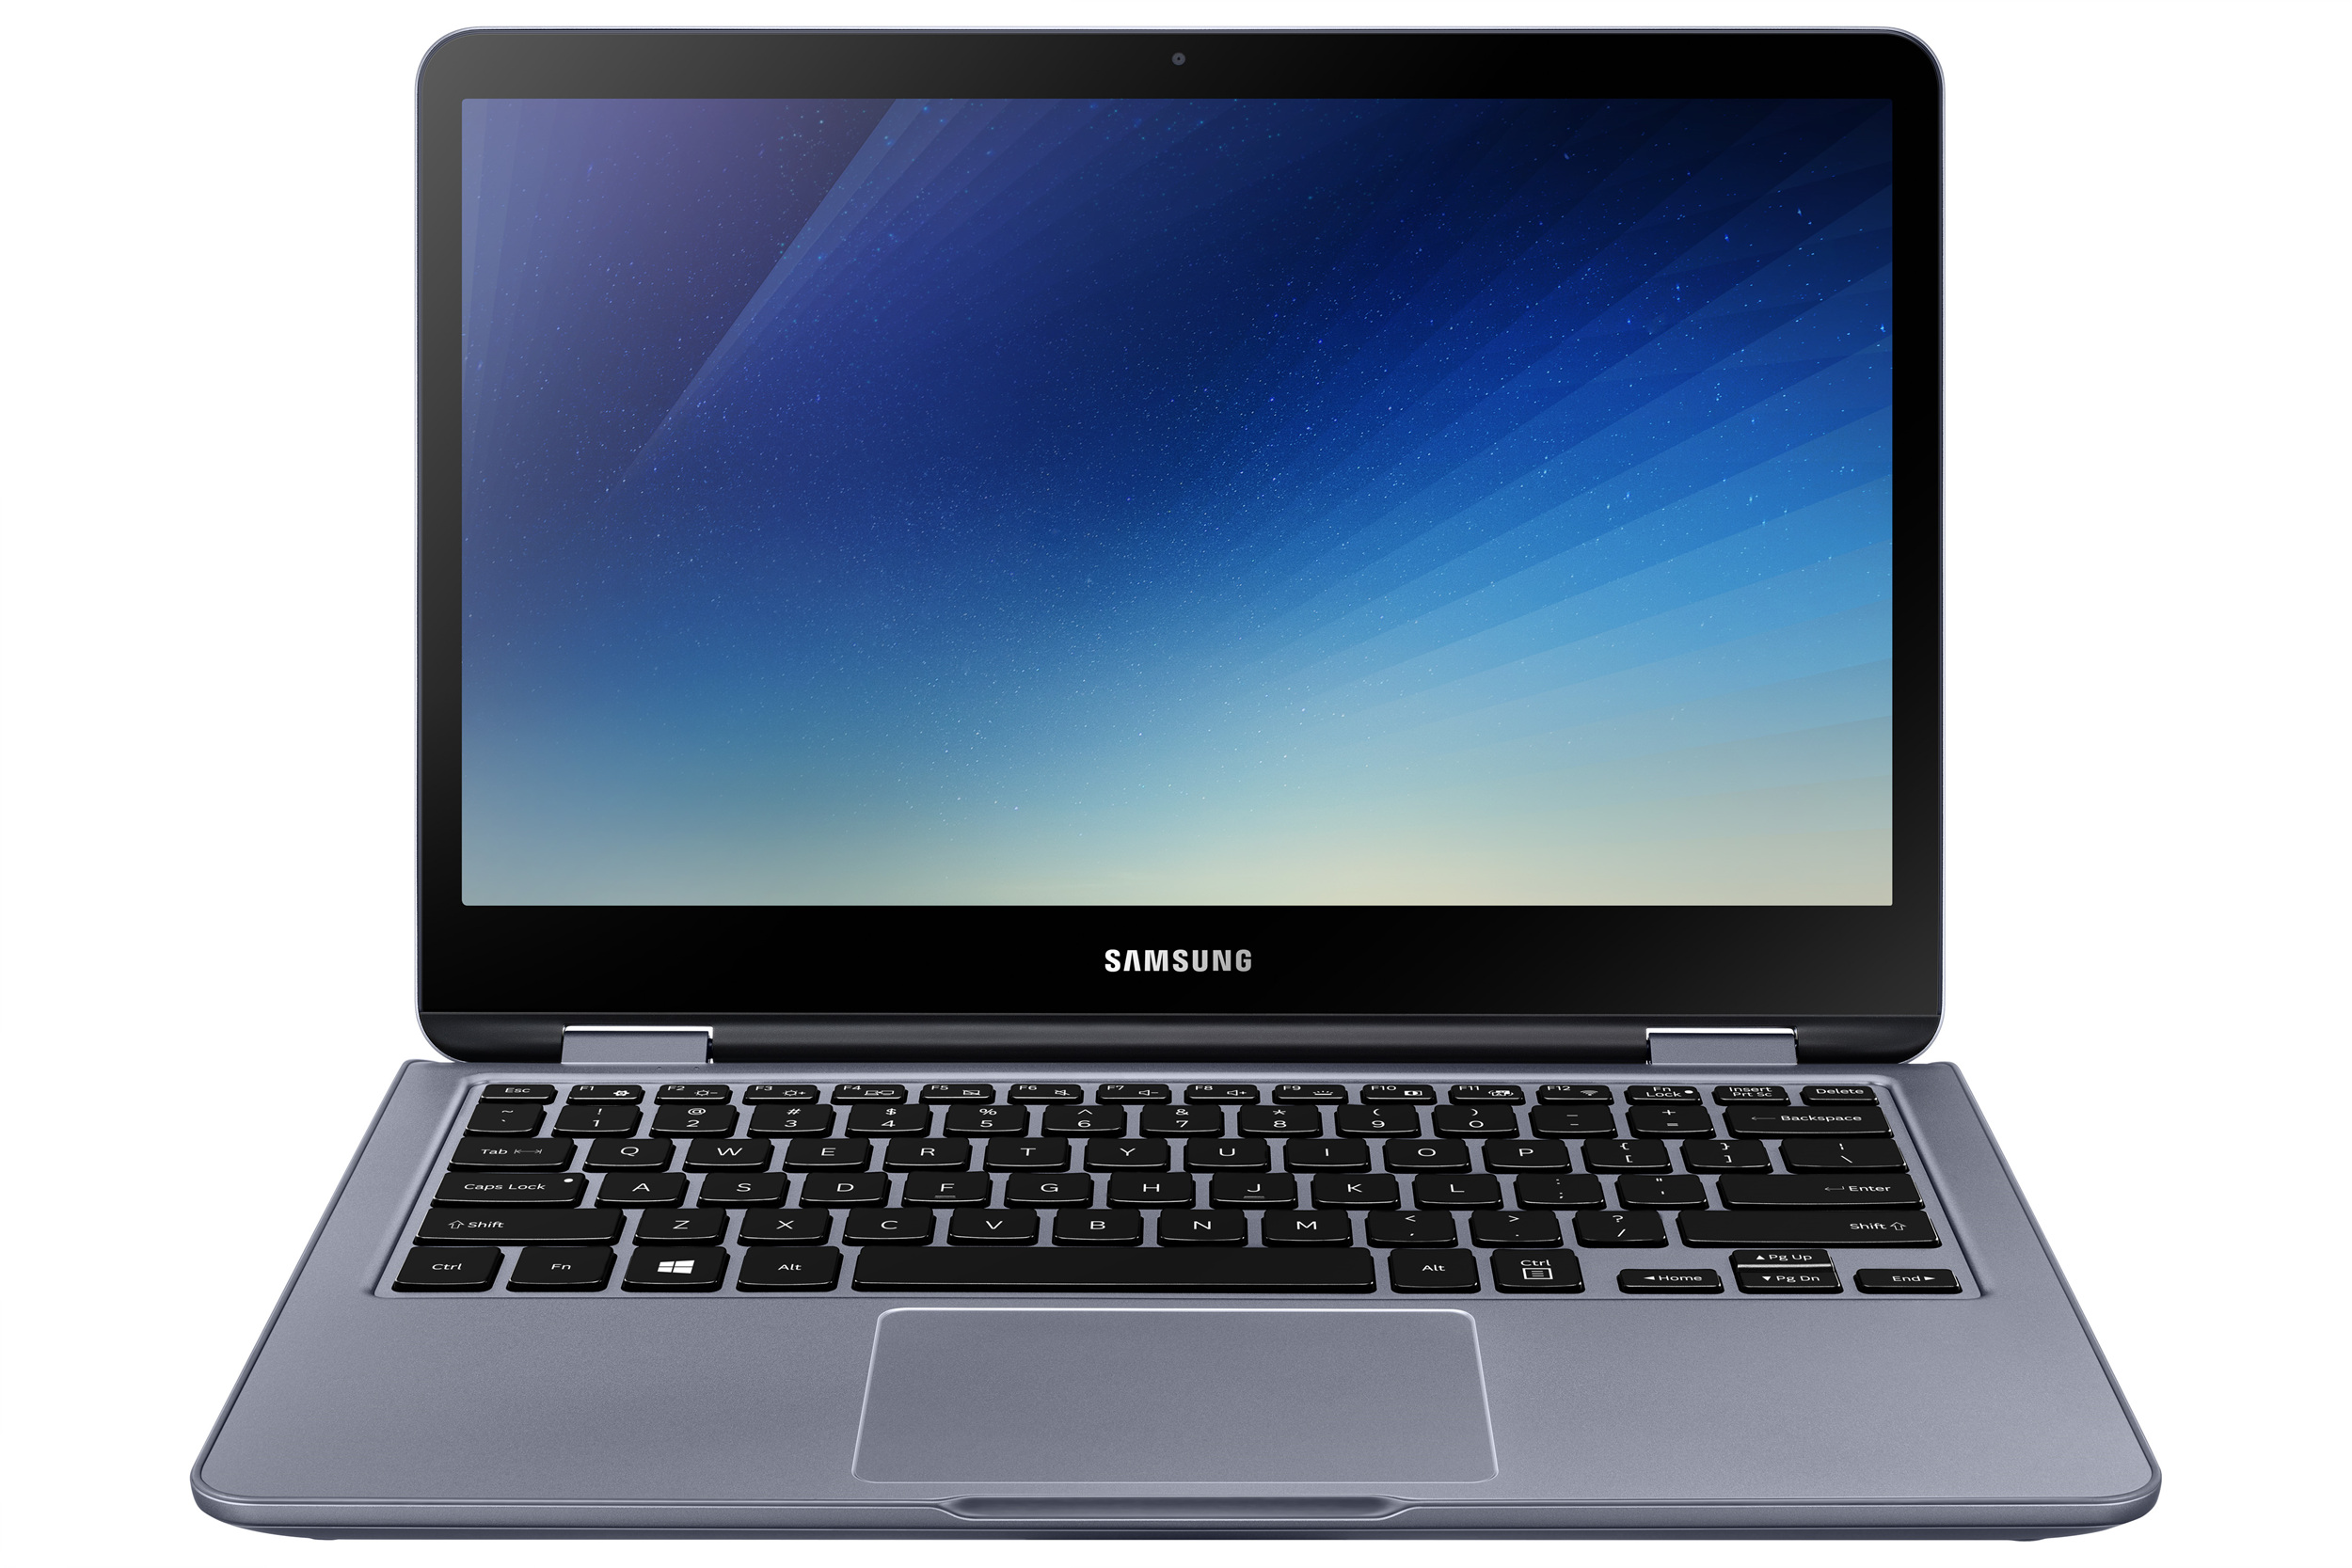 Samsung Presenta Il Nuovo Notebook 7 Spin 2018 Un Pc Flessibile Per